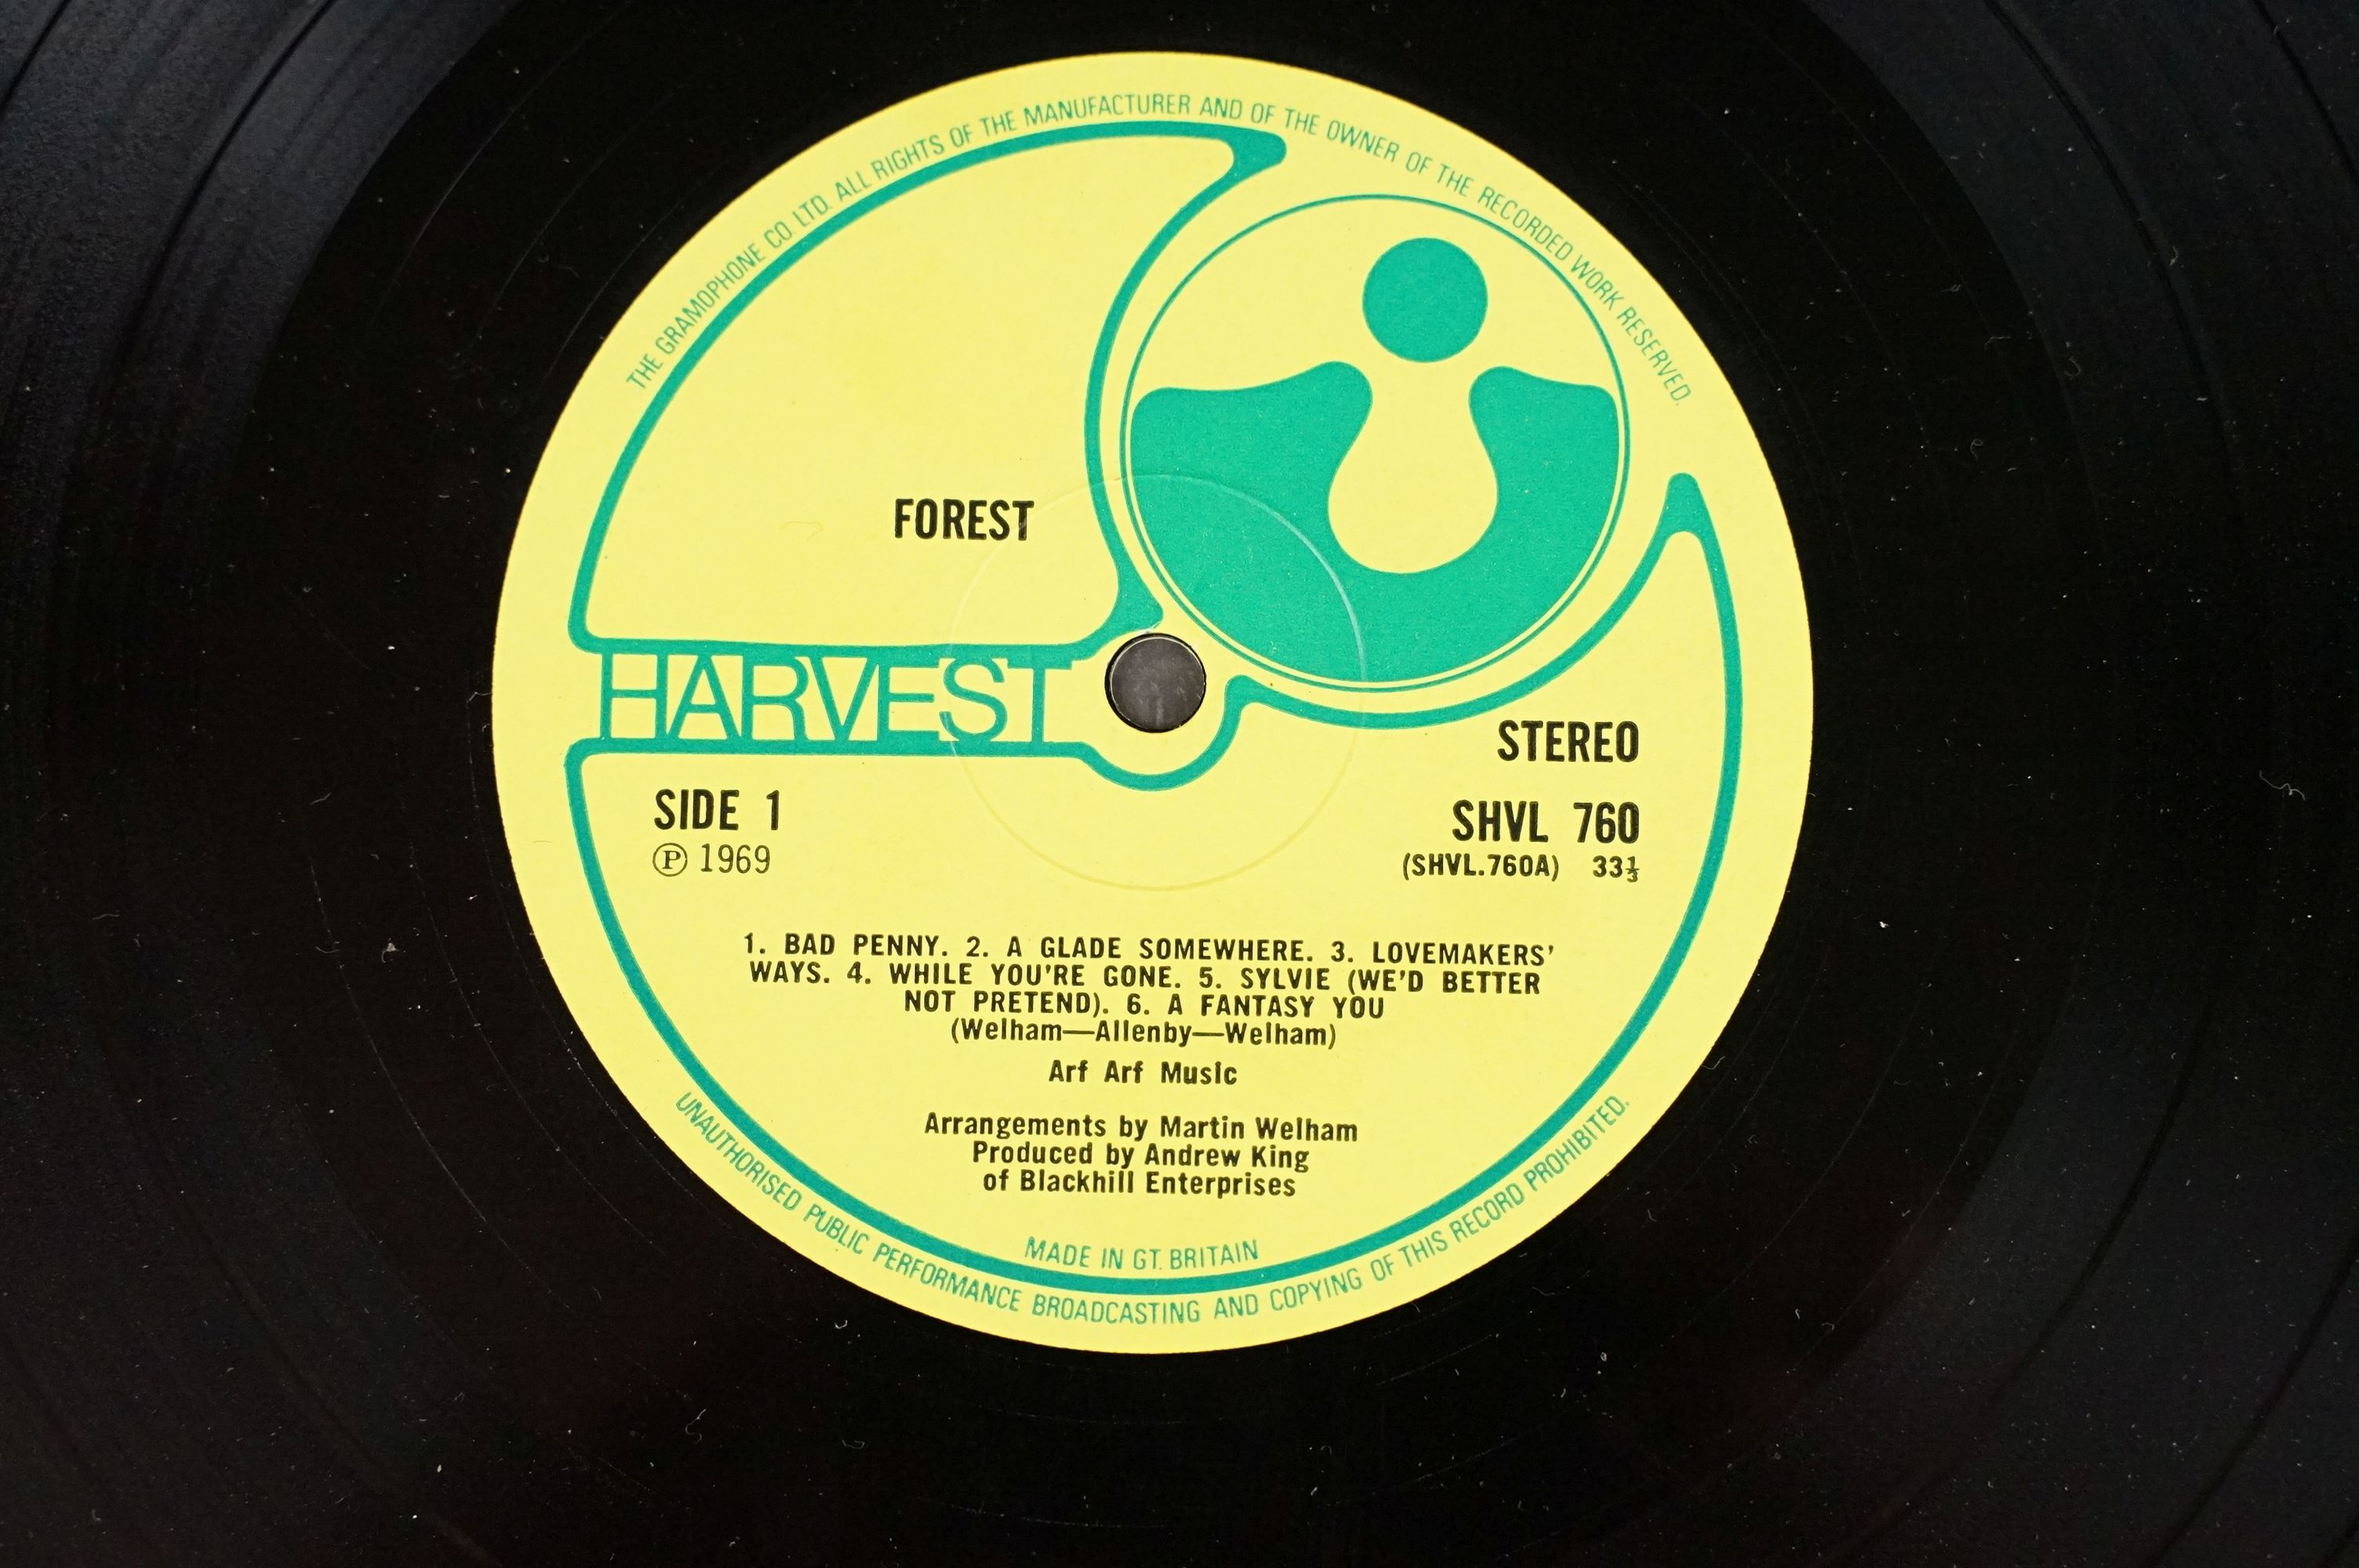 Vinyl - Forest self titled LP on Harvest Records SHVL 760. Original UK 1st pressing, no EMI on - Image 4 of 7